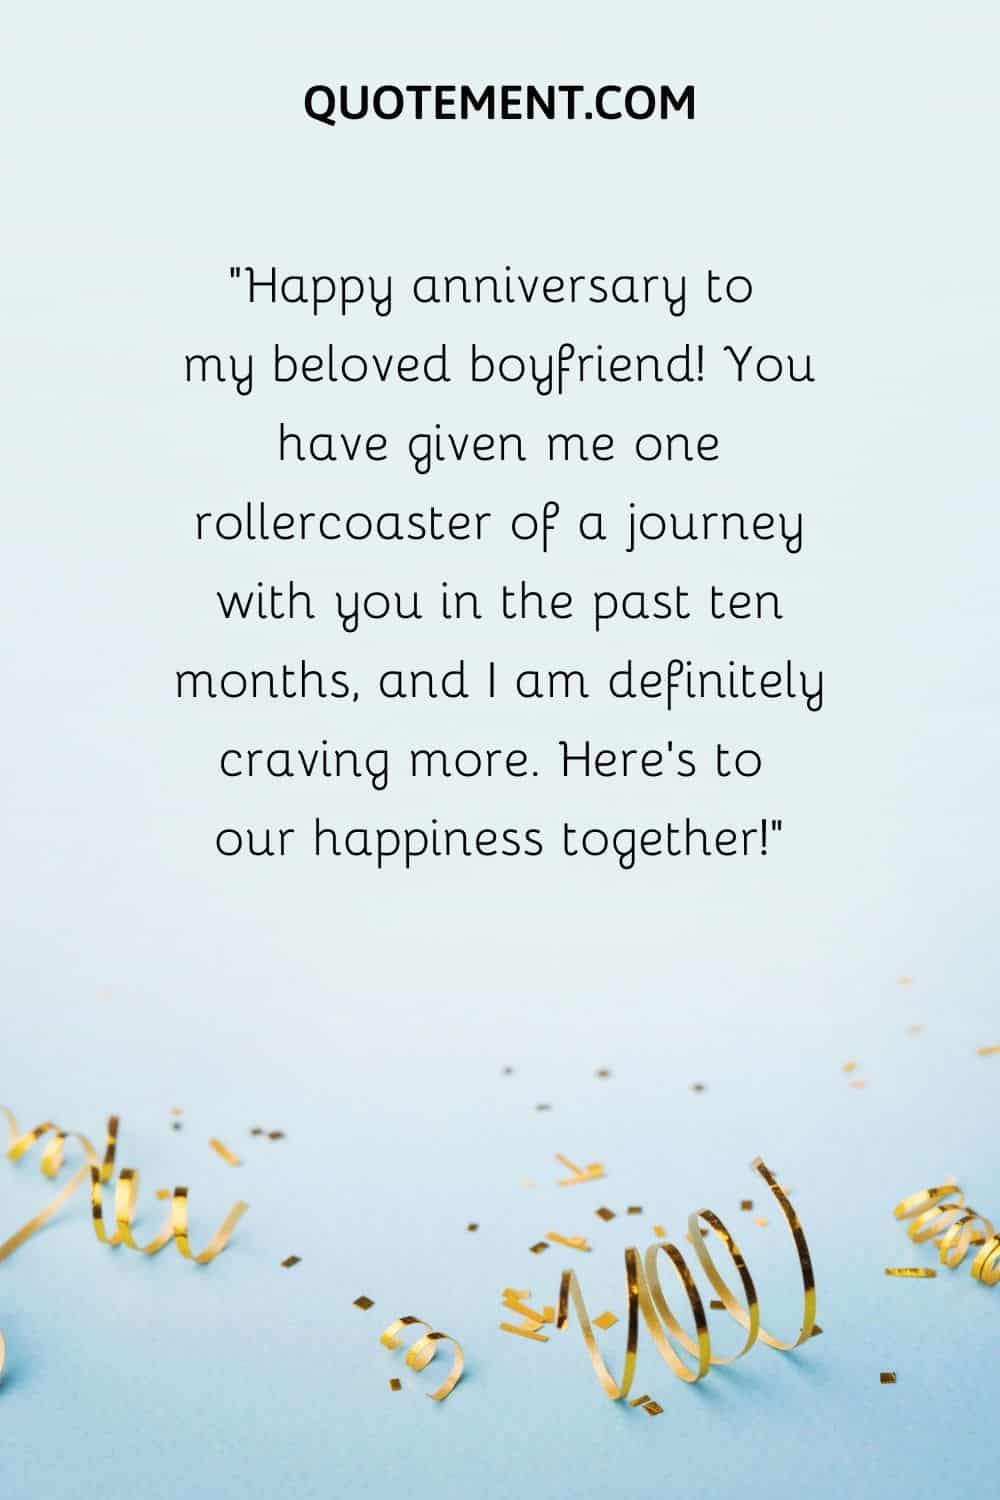 Happy anniversary to my beloved boyfriend!